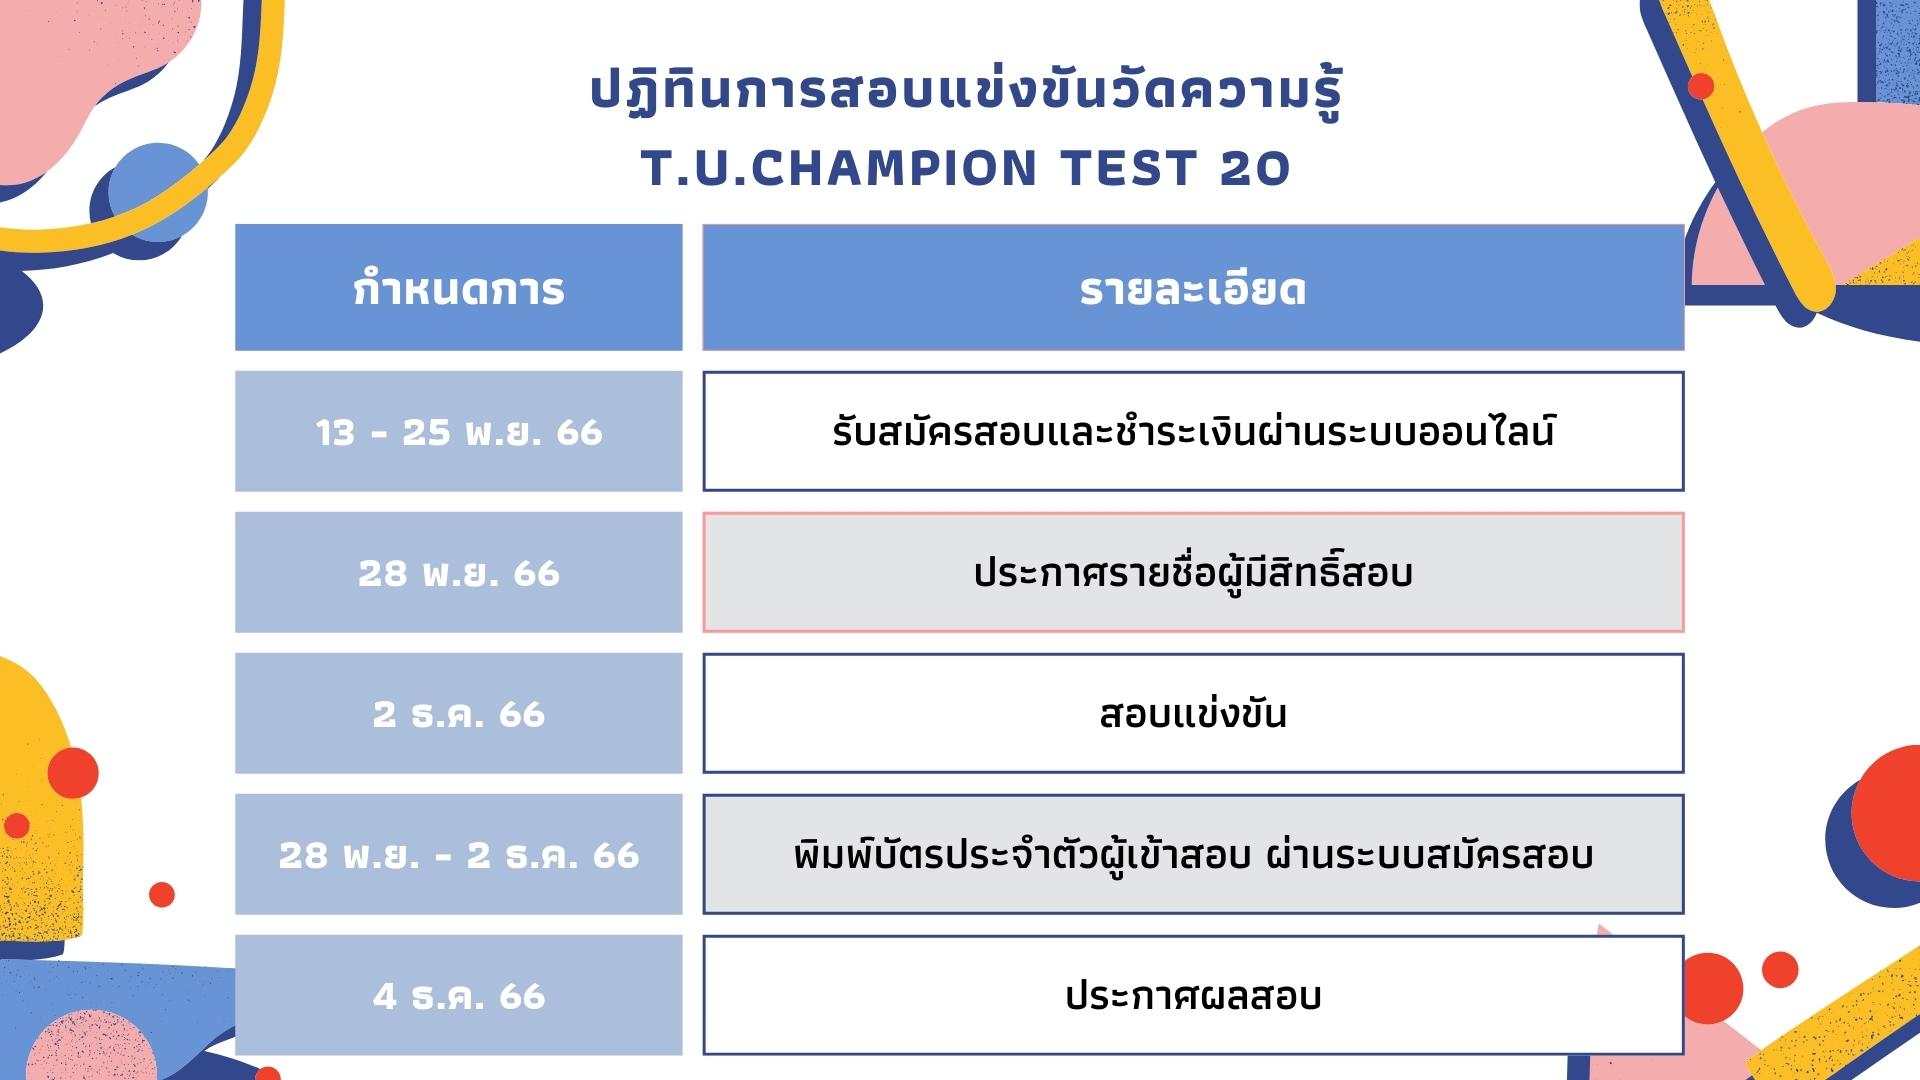 tuchamp20 schedule